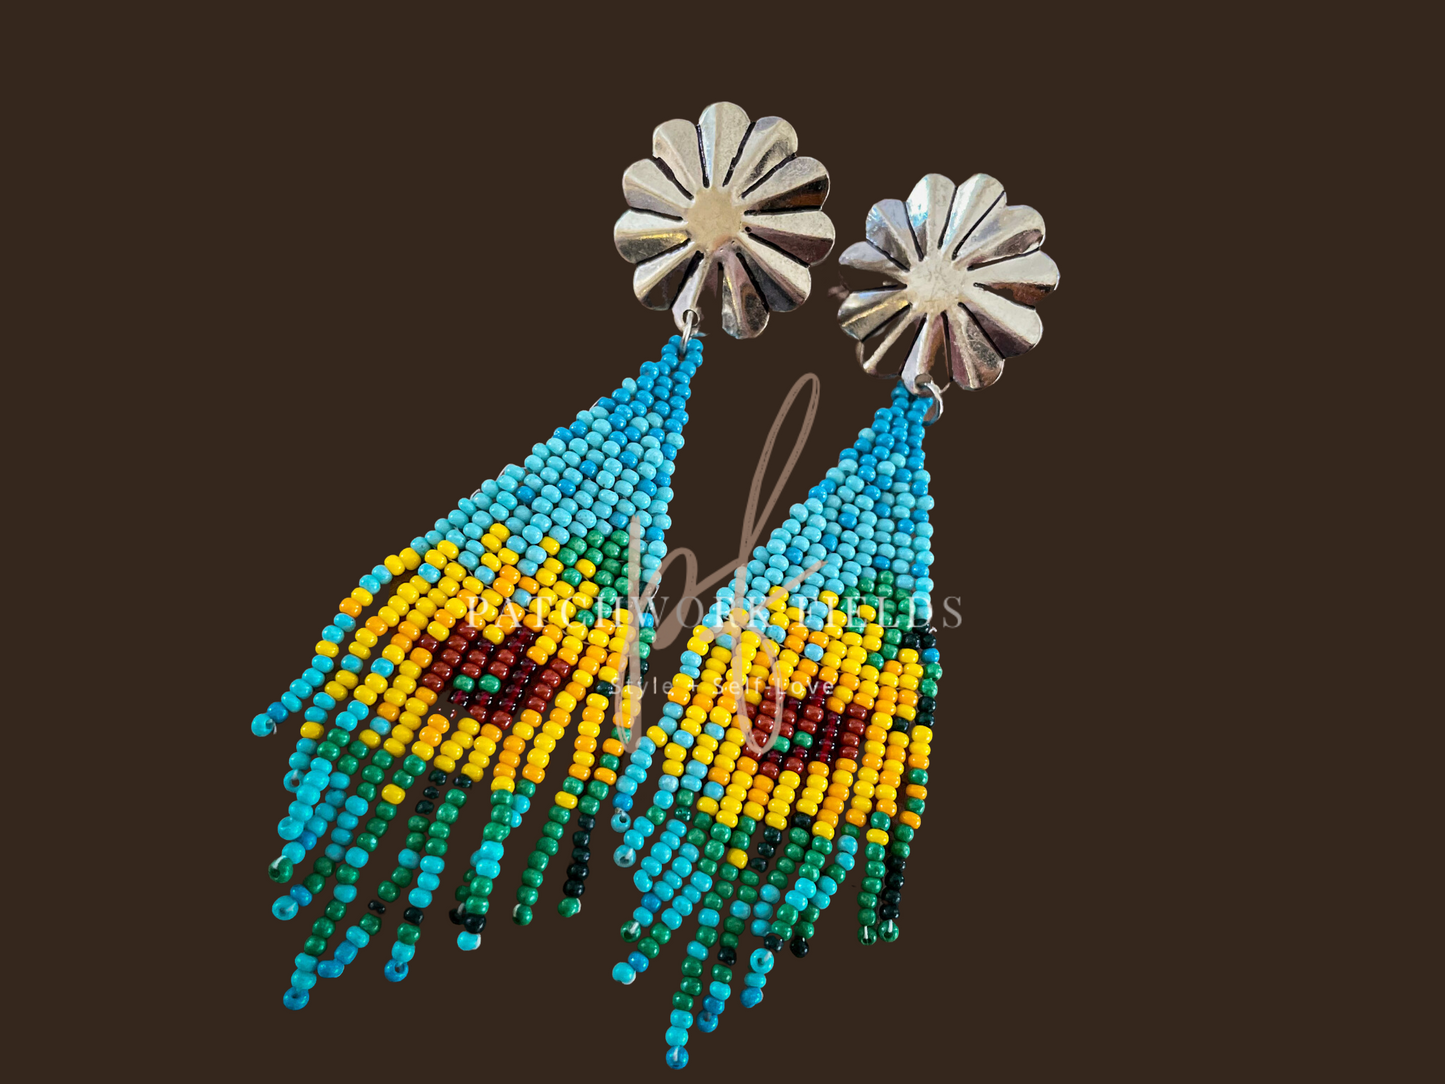 Sunflower Fields Earrings